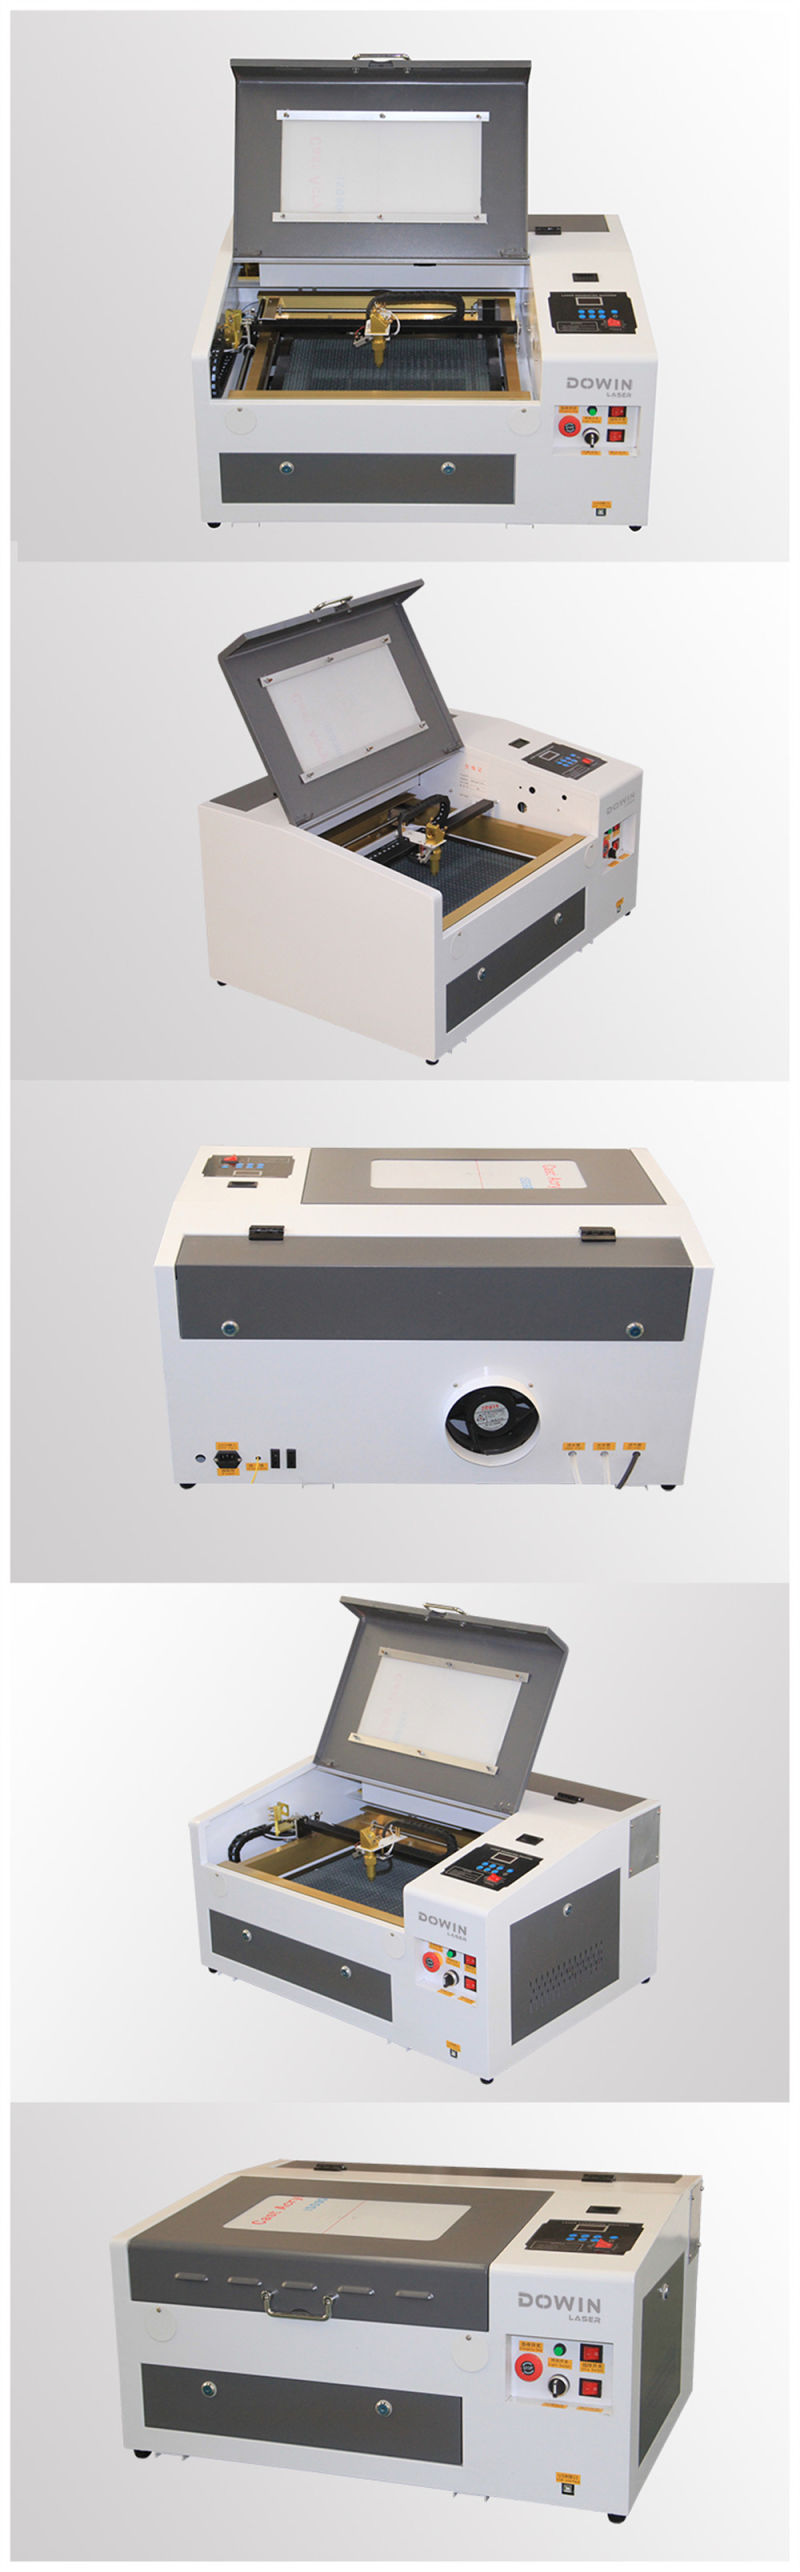 60 Watt CO2 Laser Tube for Laser Engraving Machine Sea Shell Laser Engraving Machine